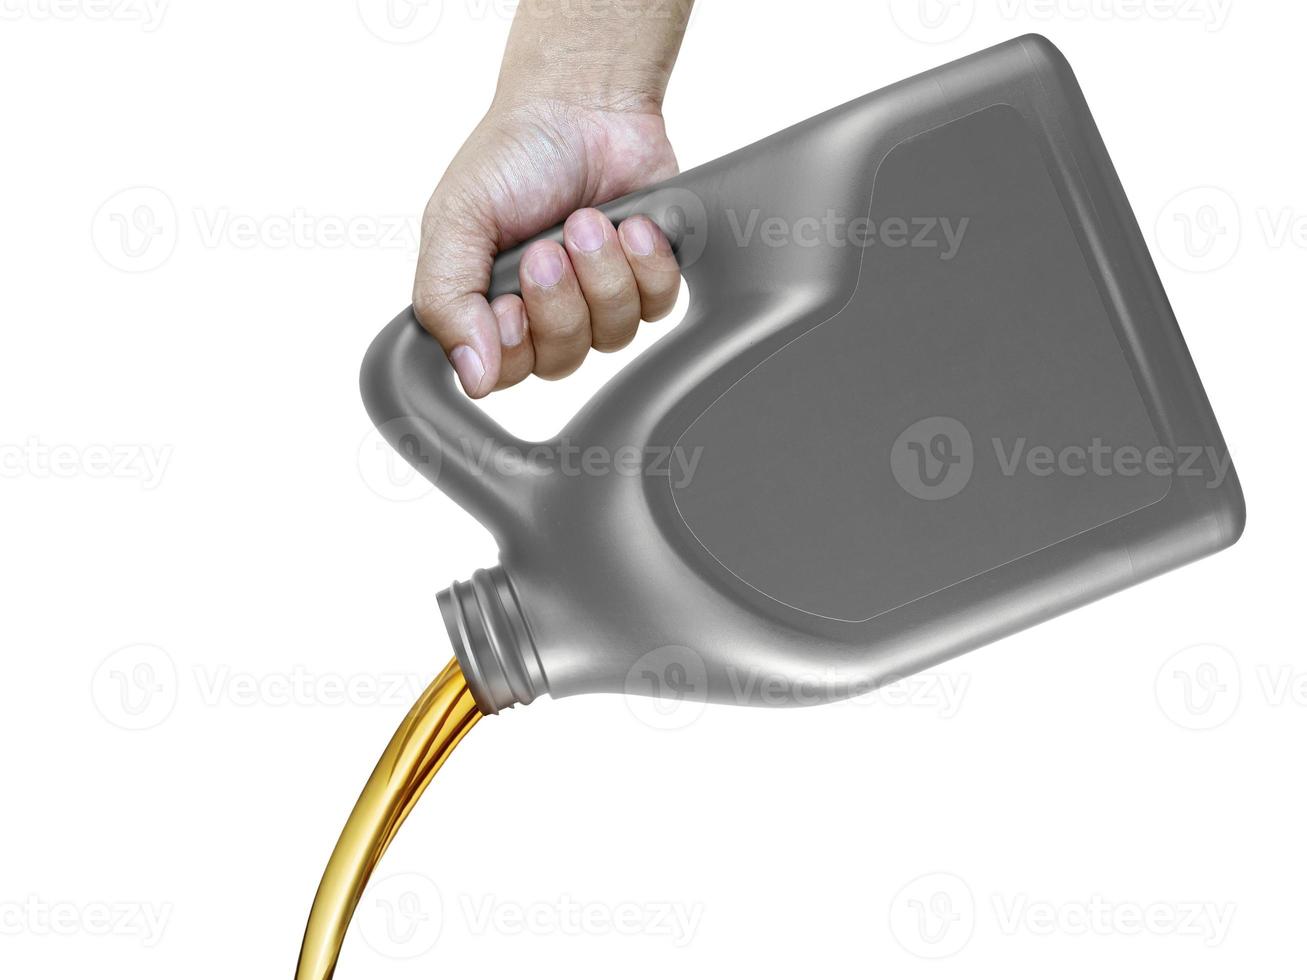 Verter aceite de motor de un recipiente en la mano aislado sobre fondo blanco. foto